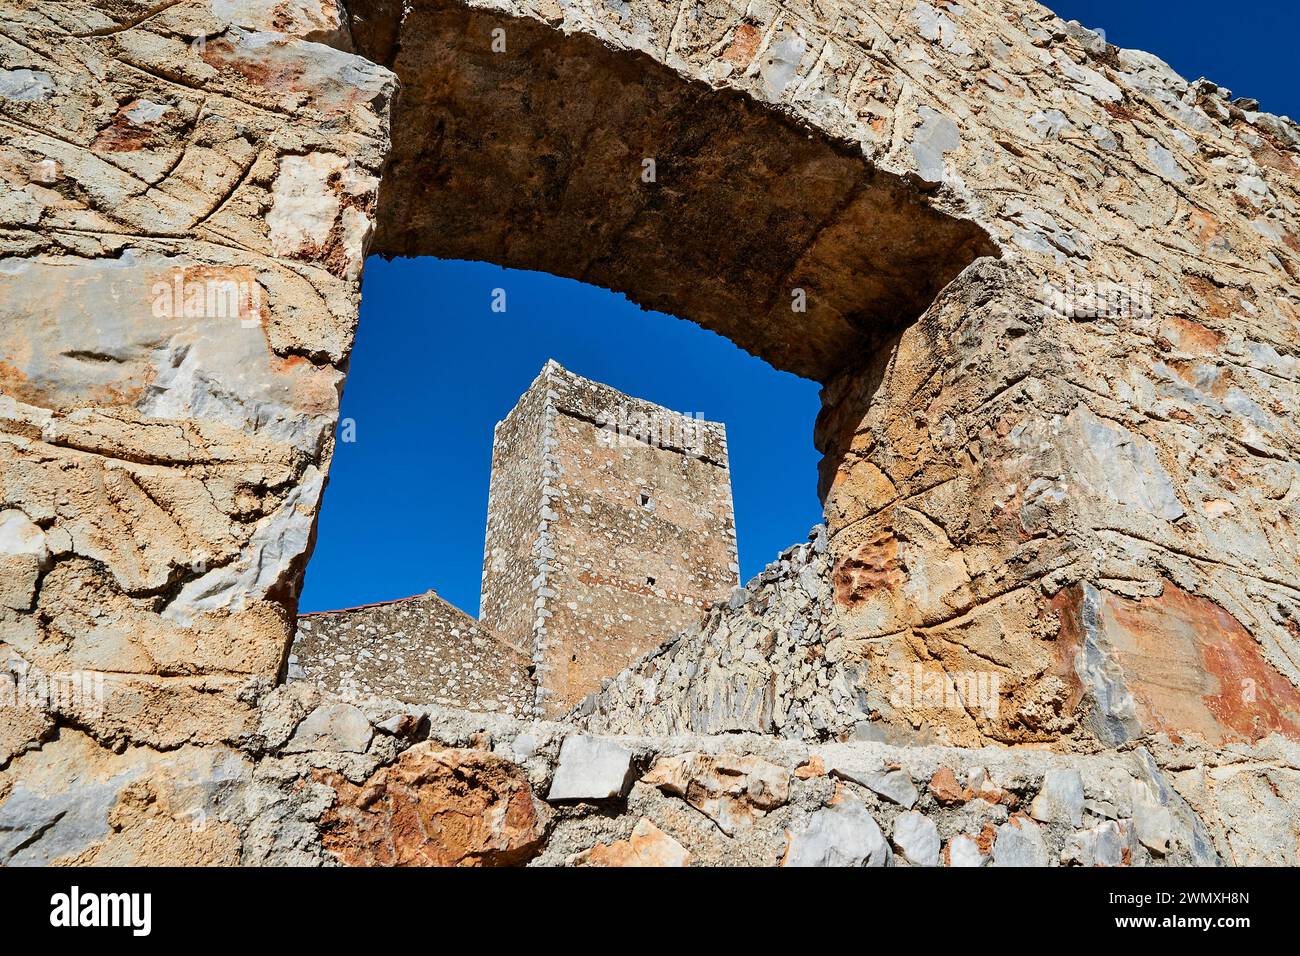 Blick durch einen Ruinenbogen zu einem klaren Himmel und anderen Steinstrukturen, Flomochori, Wohntürme Dorf, Mani Halbinsel, Peloponnes, Griechenland Stockfoto